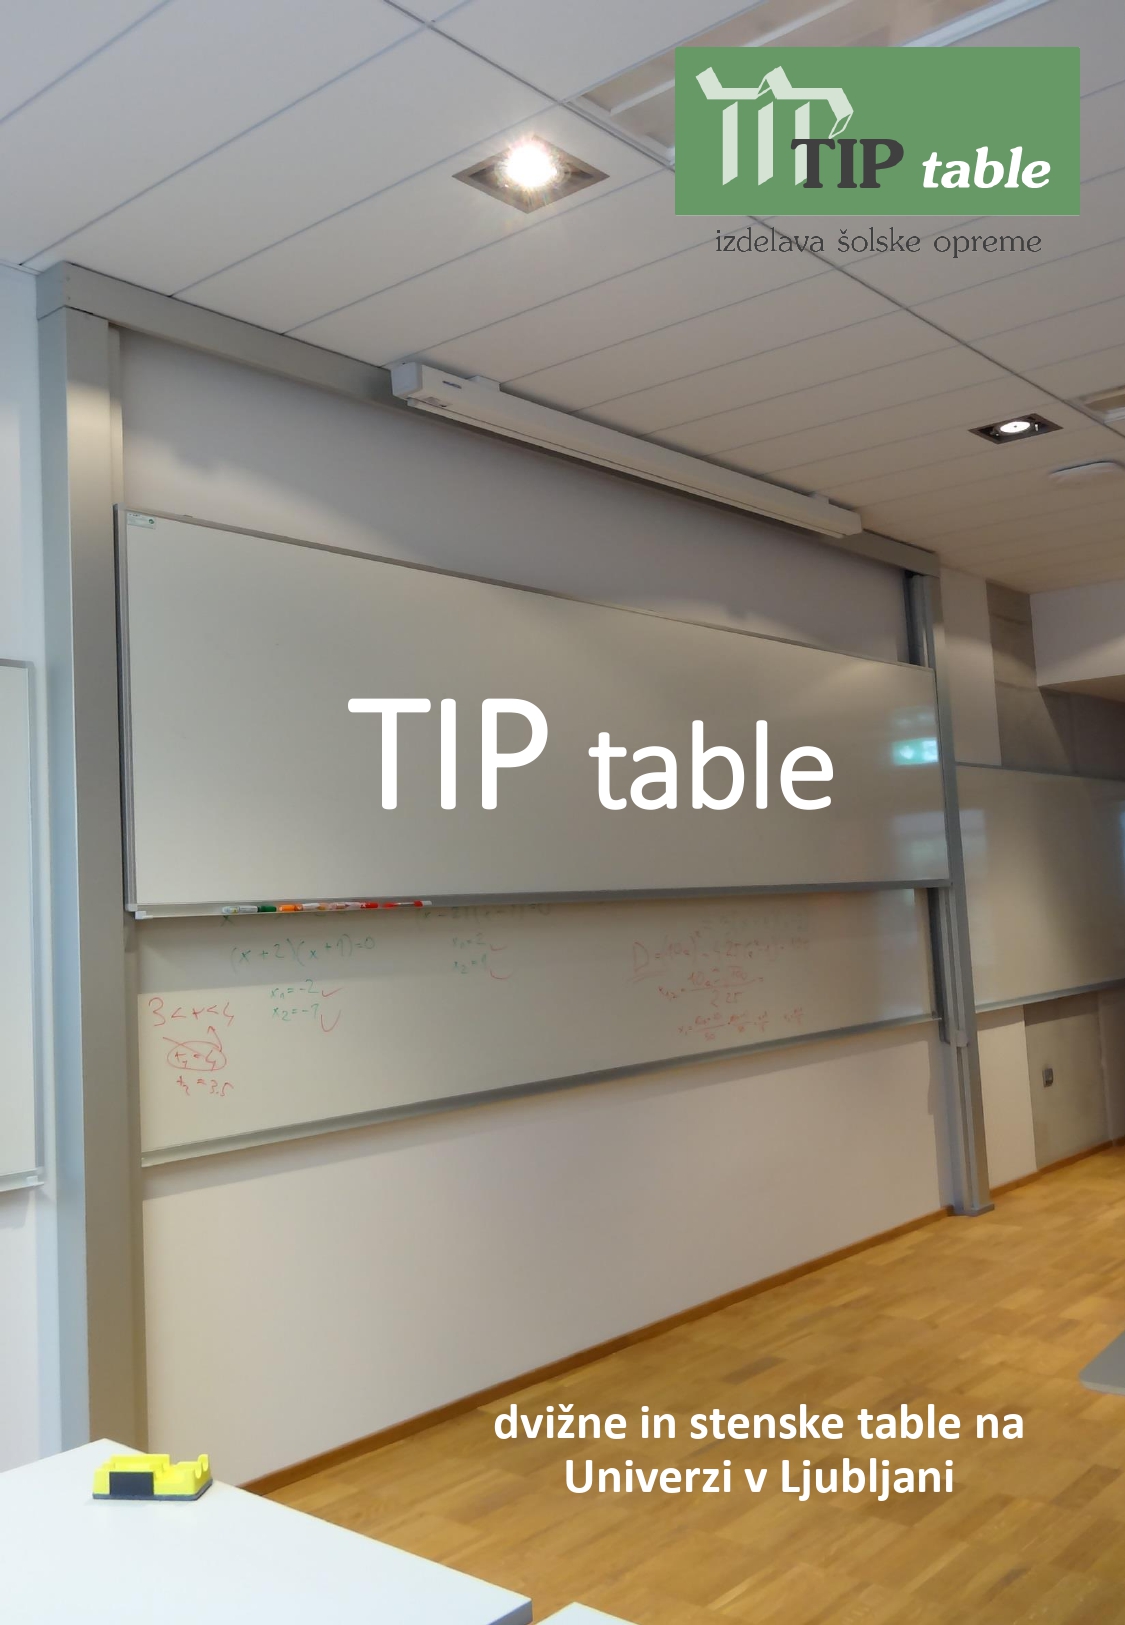 TIP table oprema univerze v Ljubljani